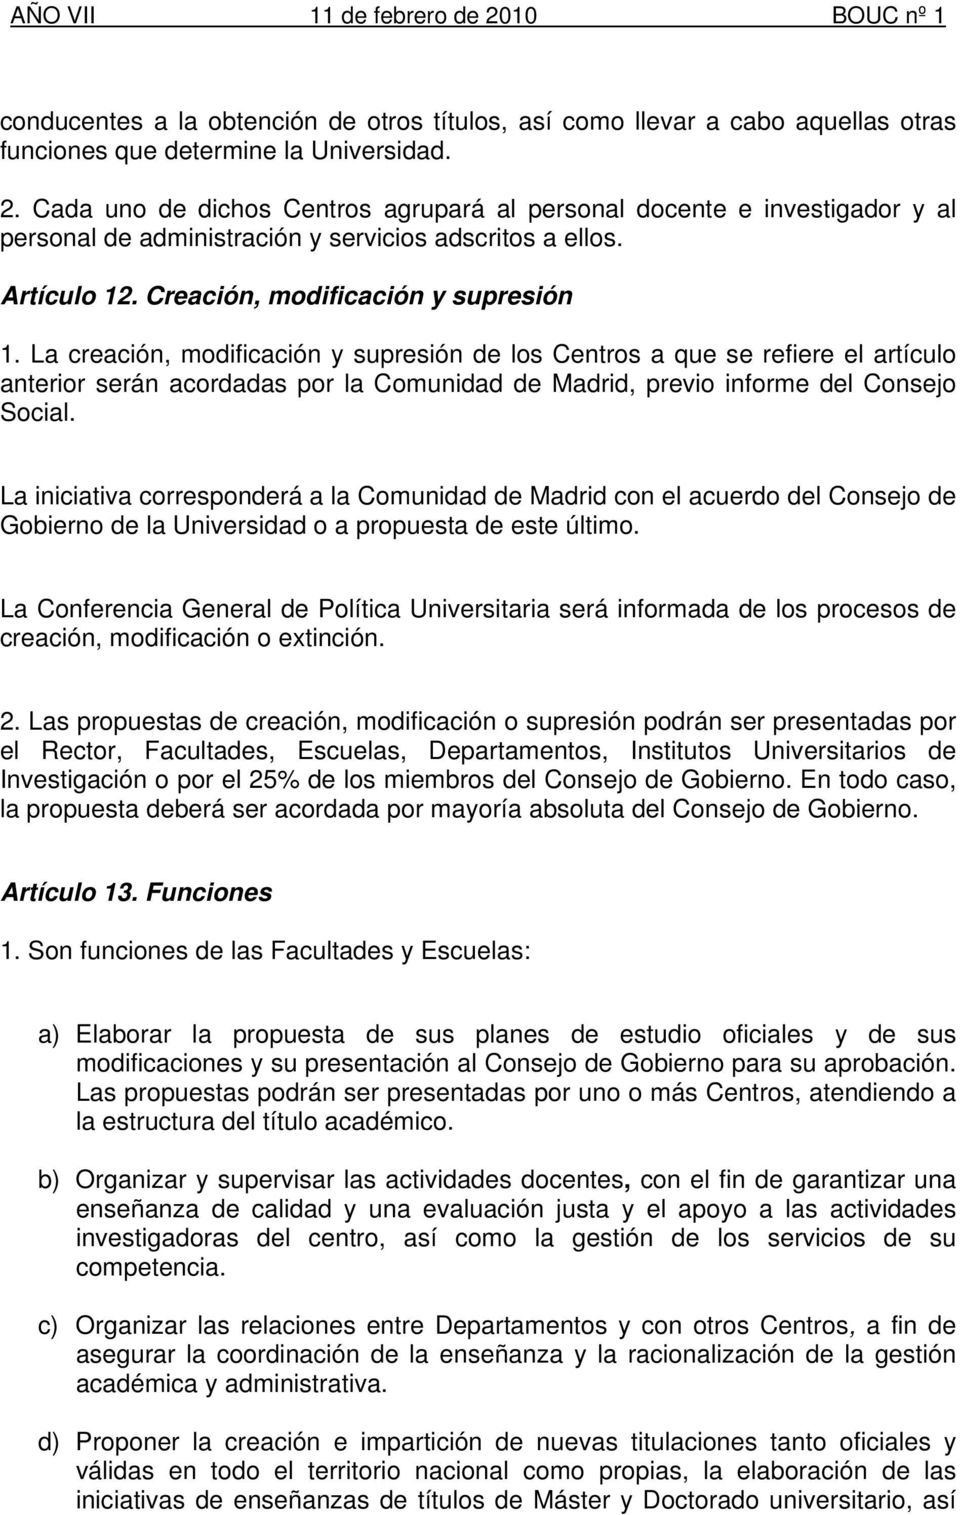 La creación, modificación y supresión de los Centros a que se refiere el artículo anterior serán acordadas por la Comunidad de Madrid, previo informe del Consejo Social.